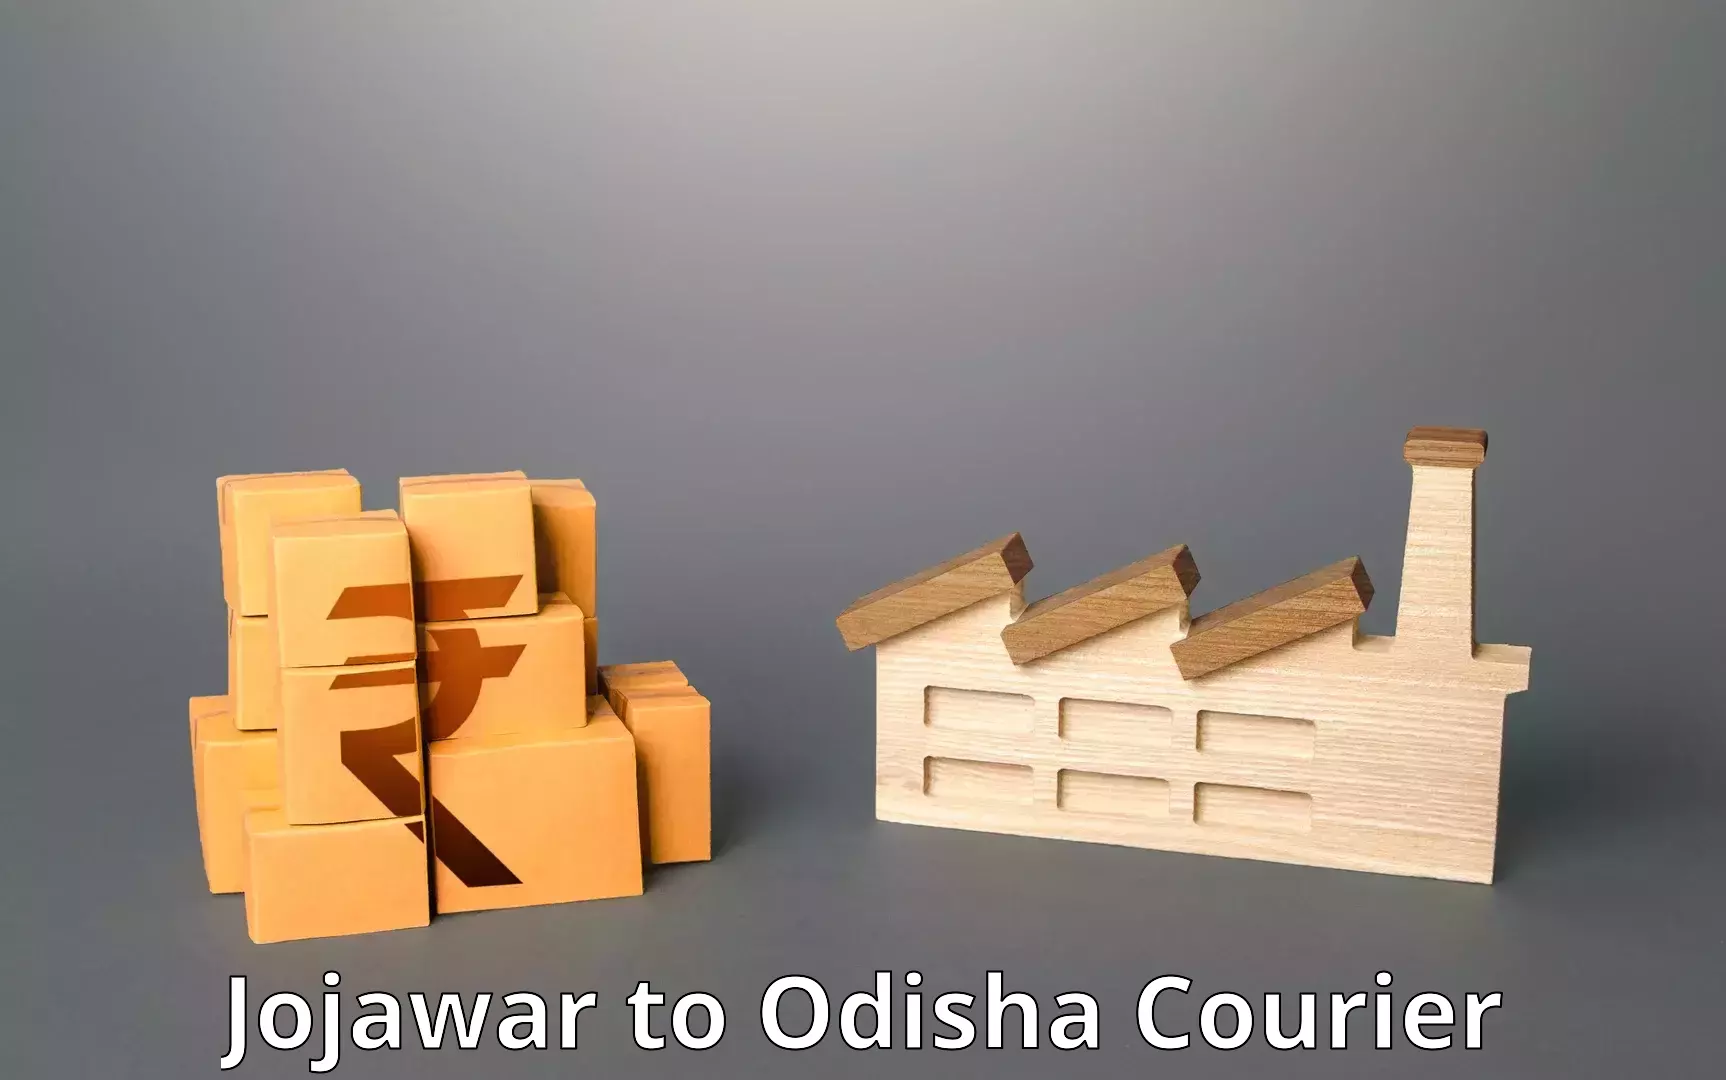 Customer-centric shipping Jojawar to Champua